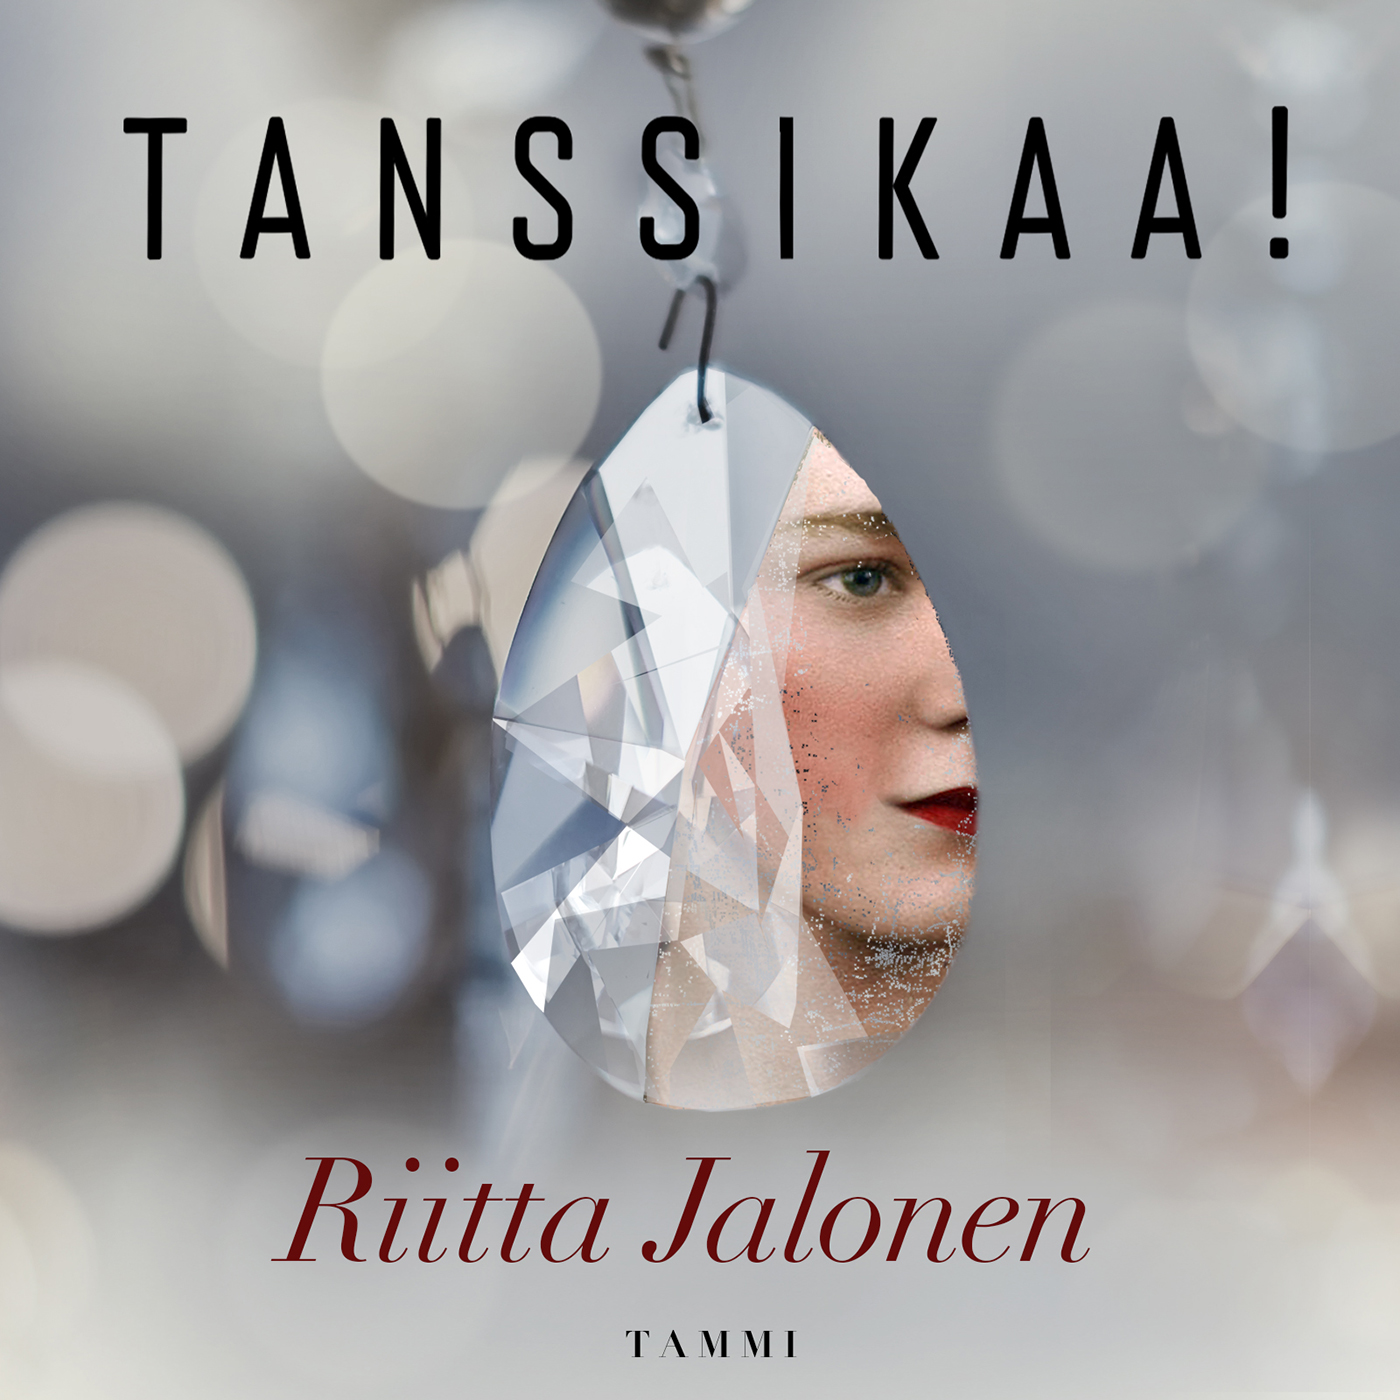 Jalonen, Riitta - Tanssikaa!, äänikirja